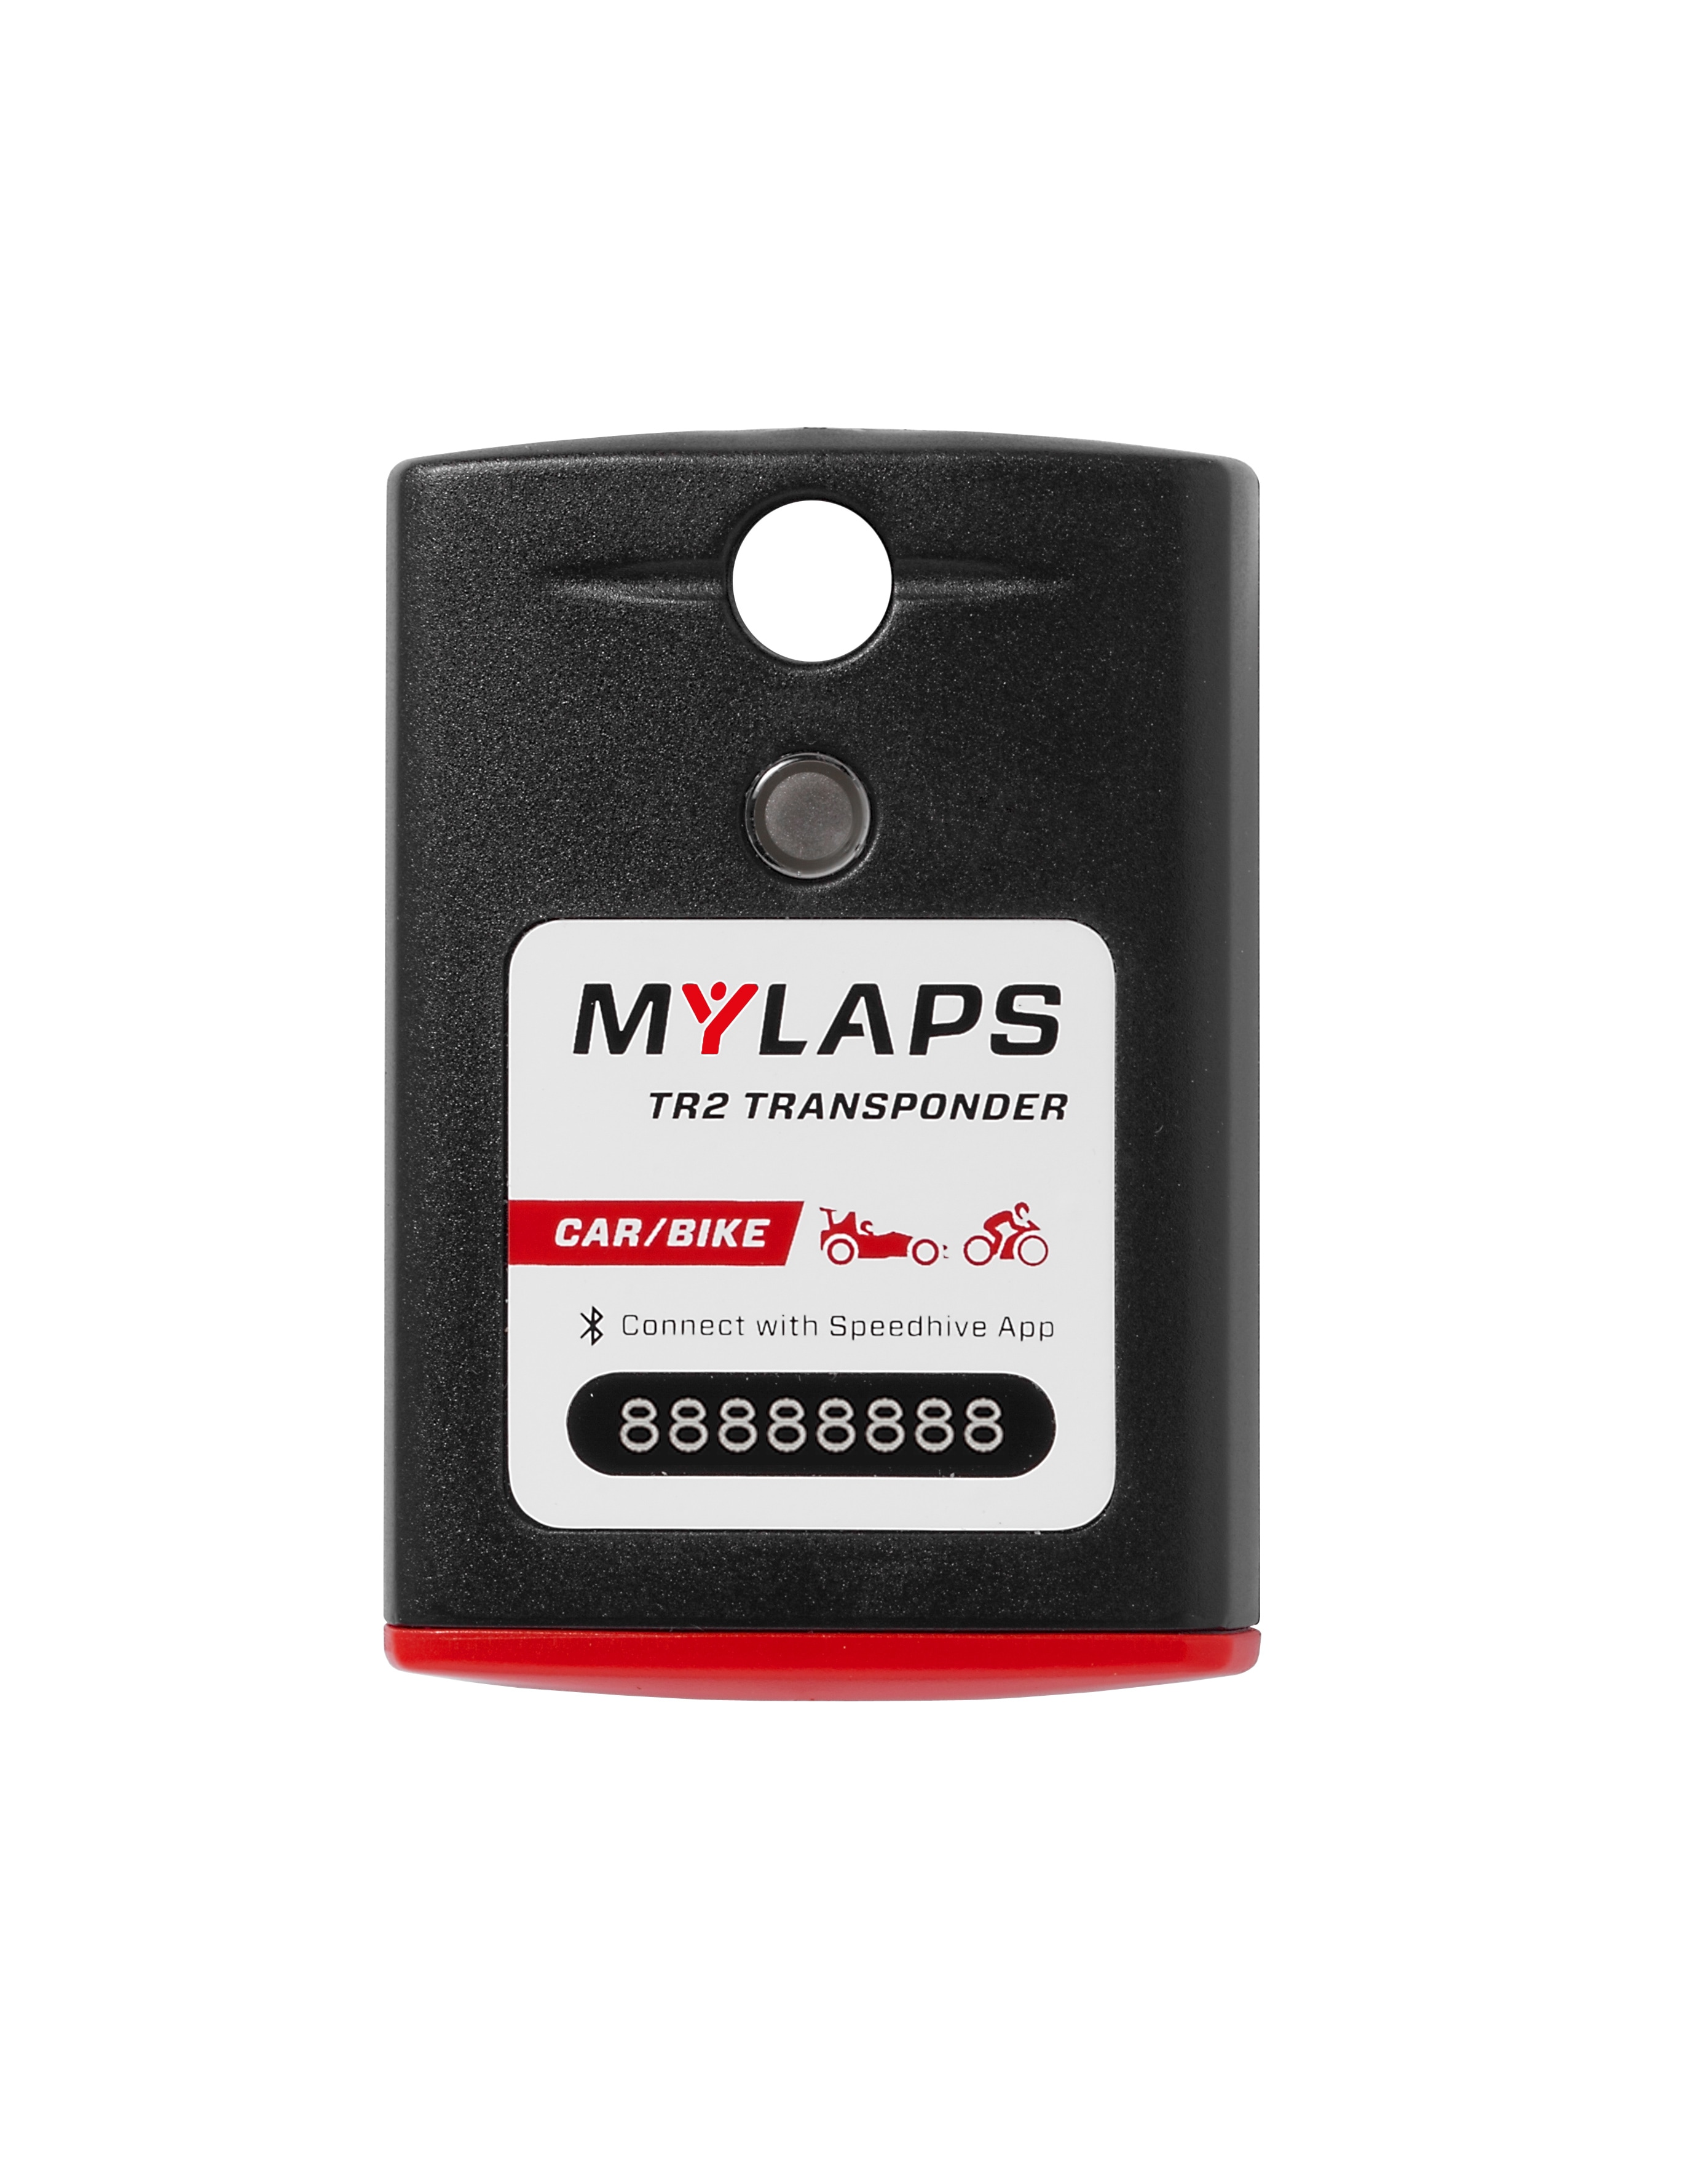 Transponderi MyLaps TR2, autoon/moottoripyörään 5 vuosi